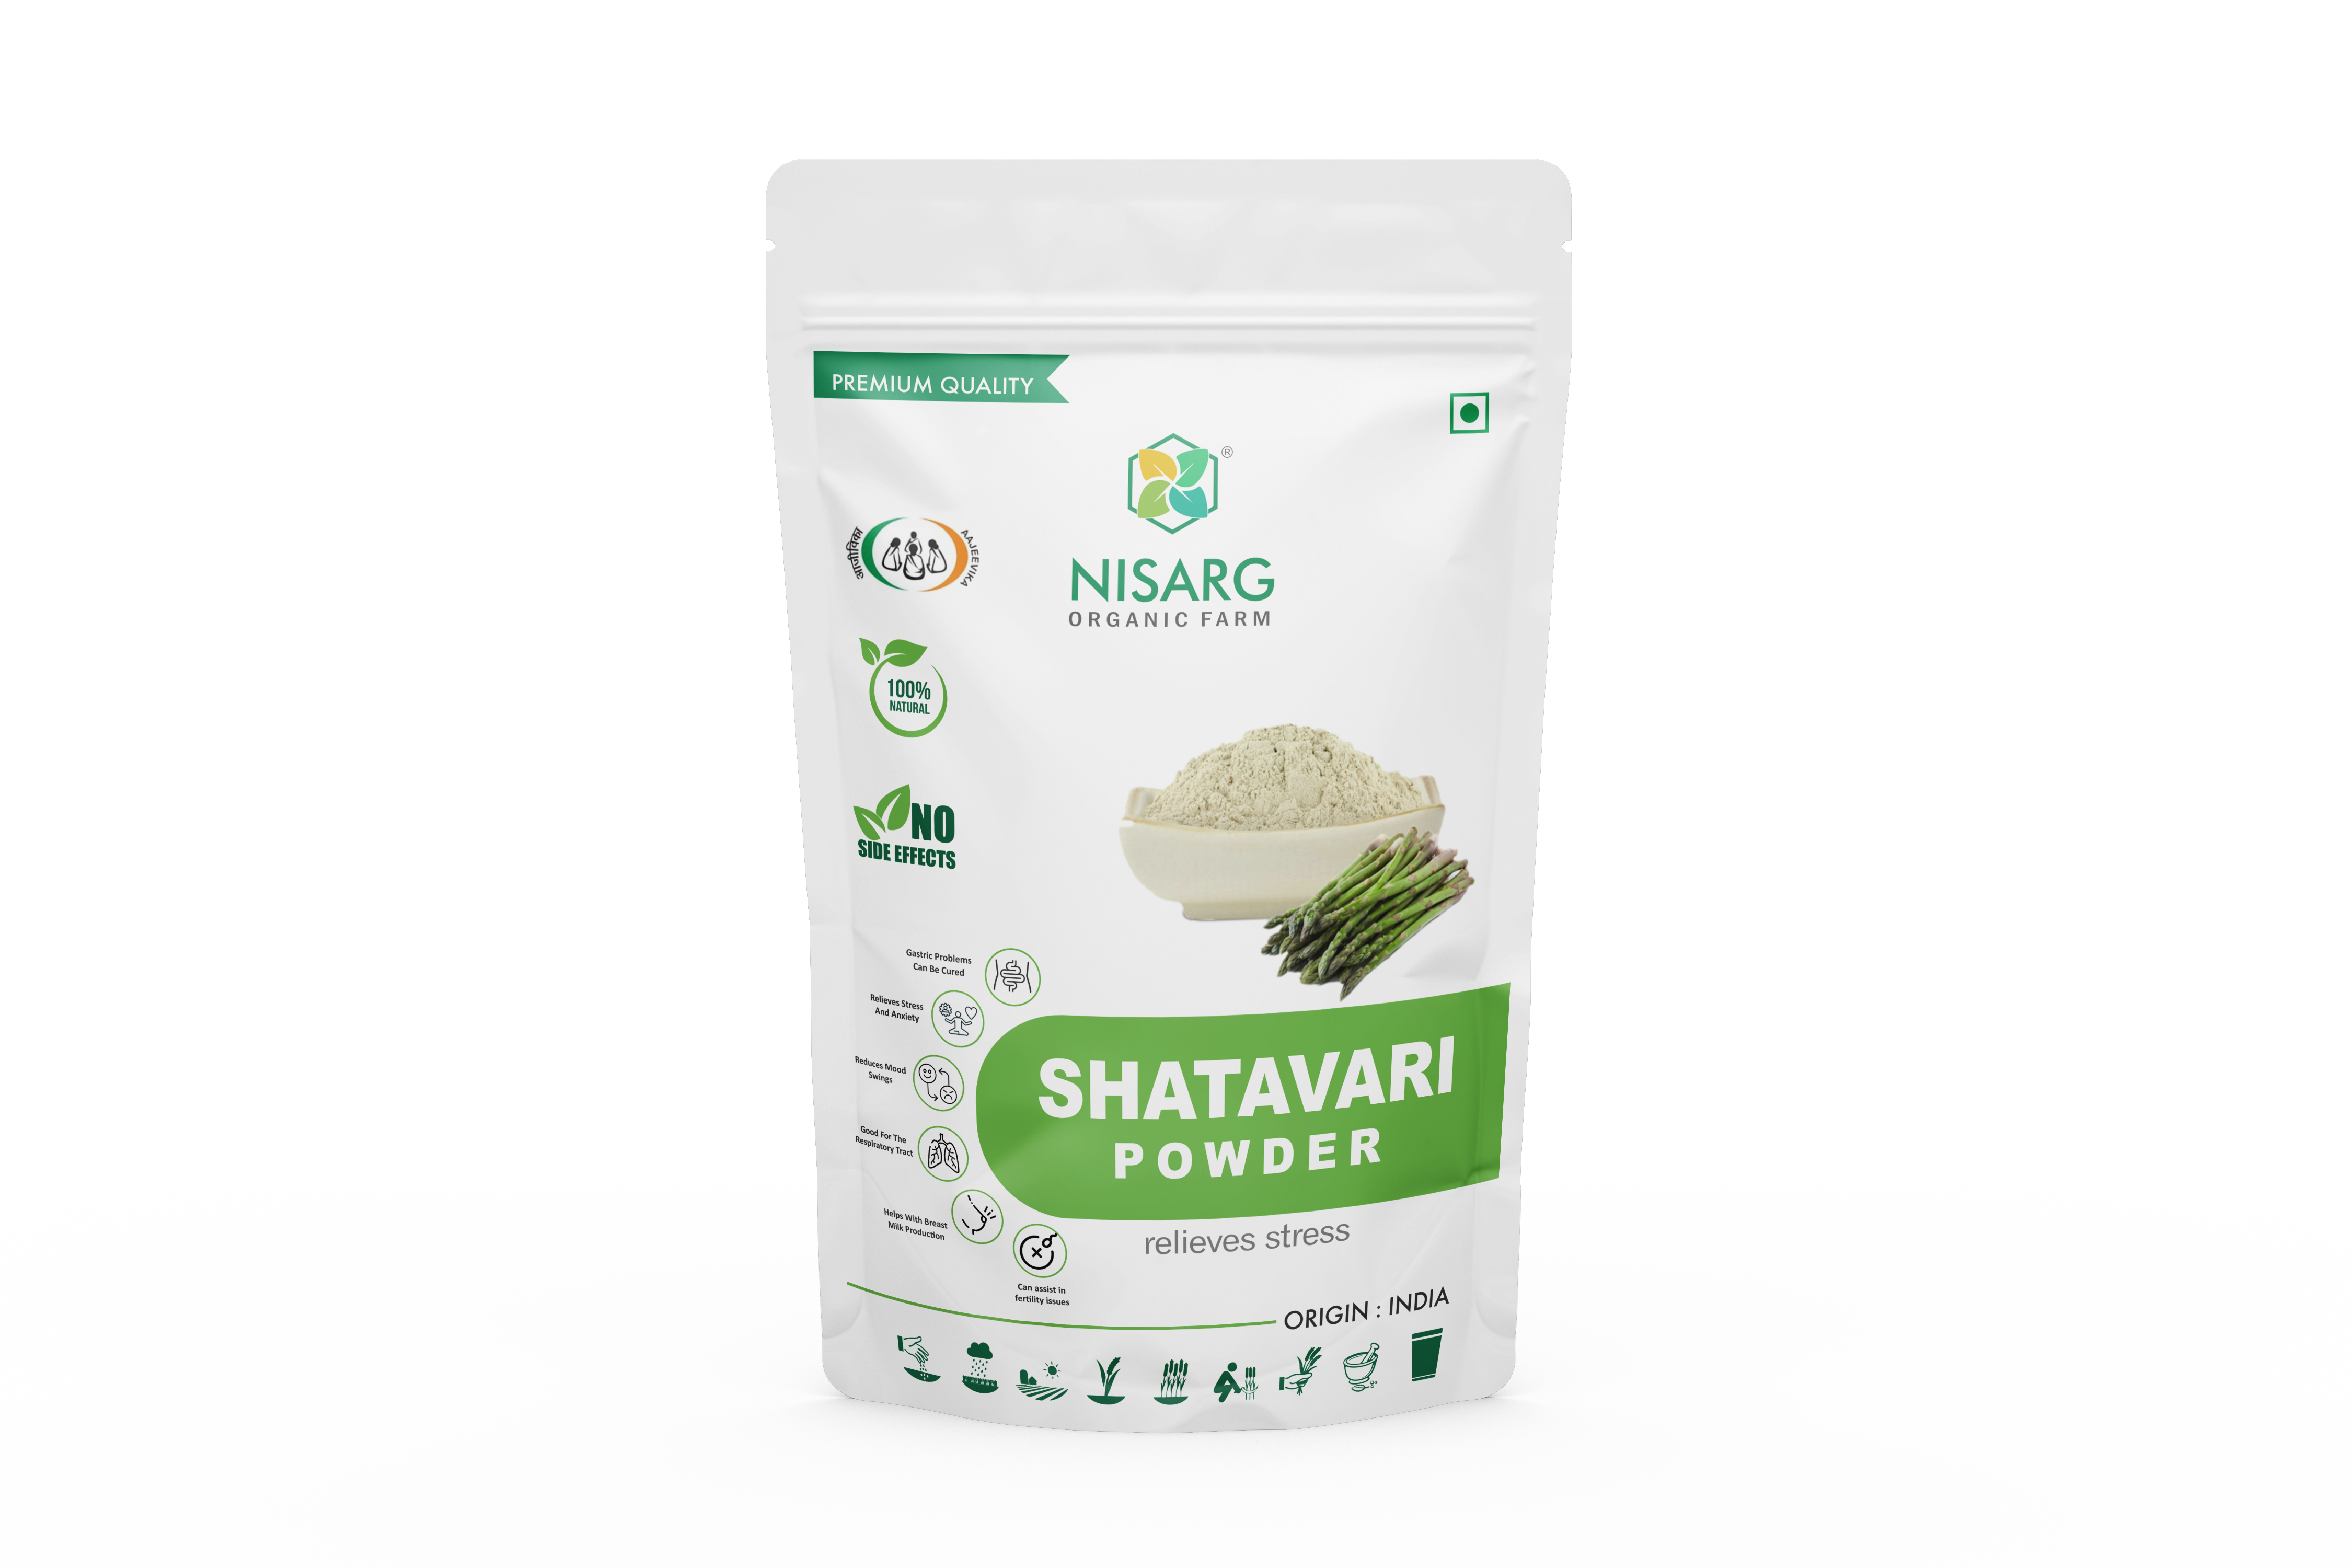 Nisarg Organic Farm Shatavari Powder